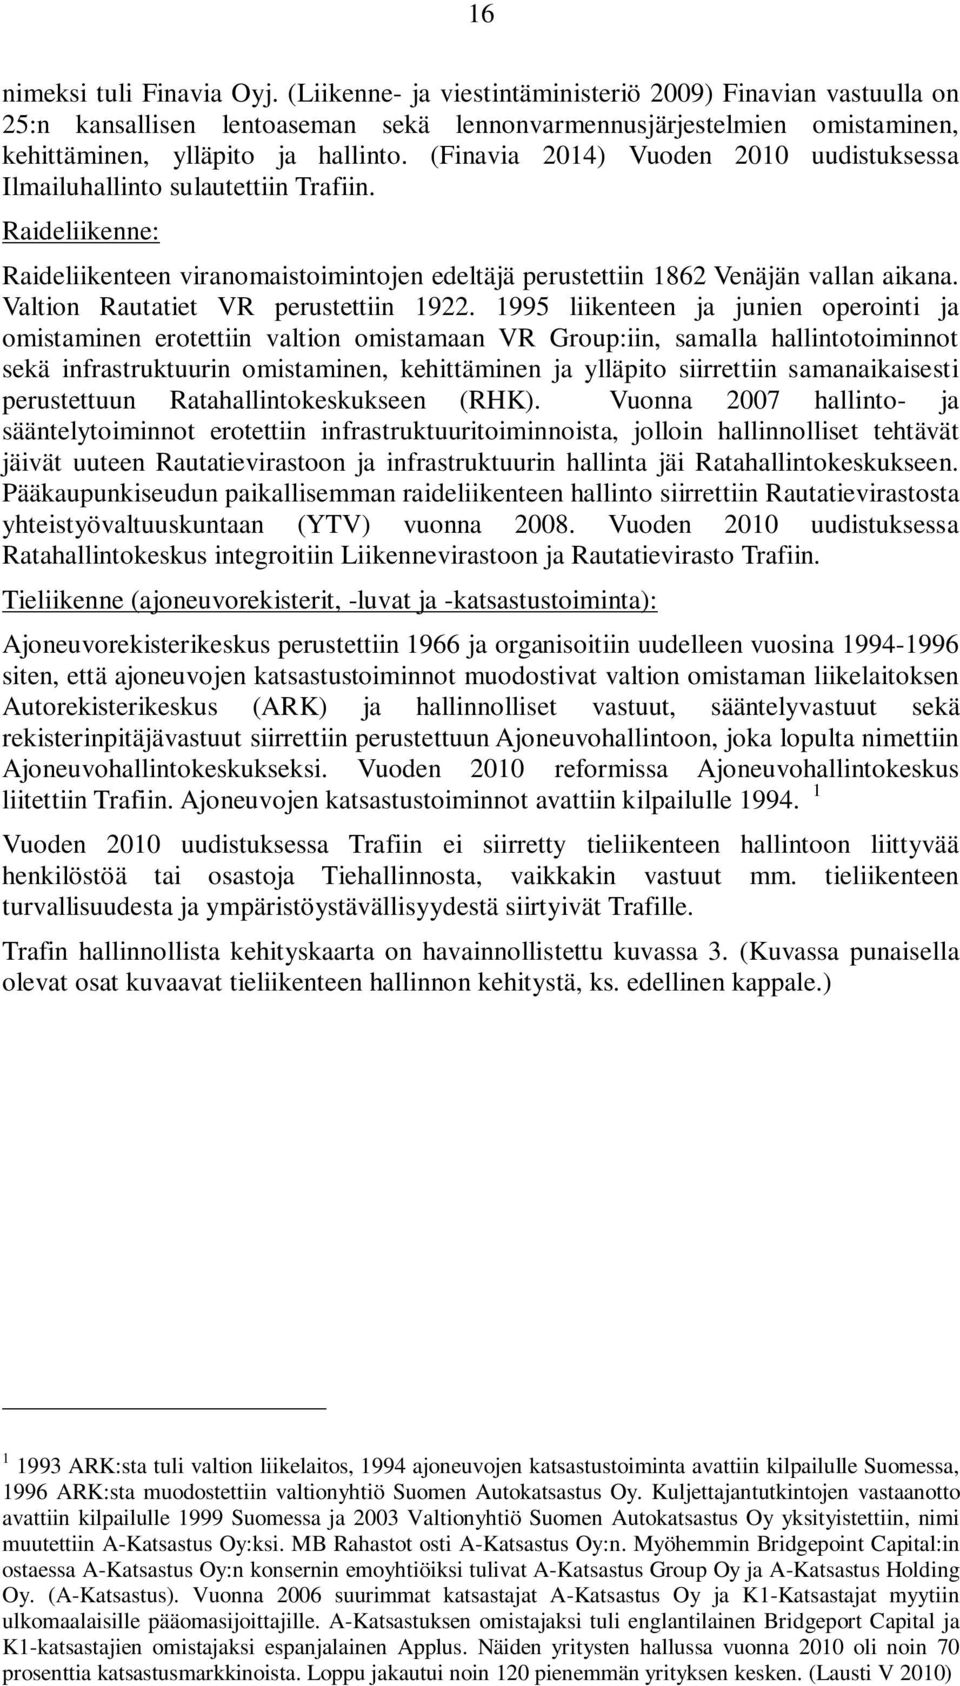 (Finavia 2014) Vuoden 2010 uudistuksessa Ilmailuhallinto sulautettiin Trafiin. Raideliikenne: Raideliikenteen viranomaistoimintojen edeltäjä perustettiin 1862 Venäjän vallan aikana.